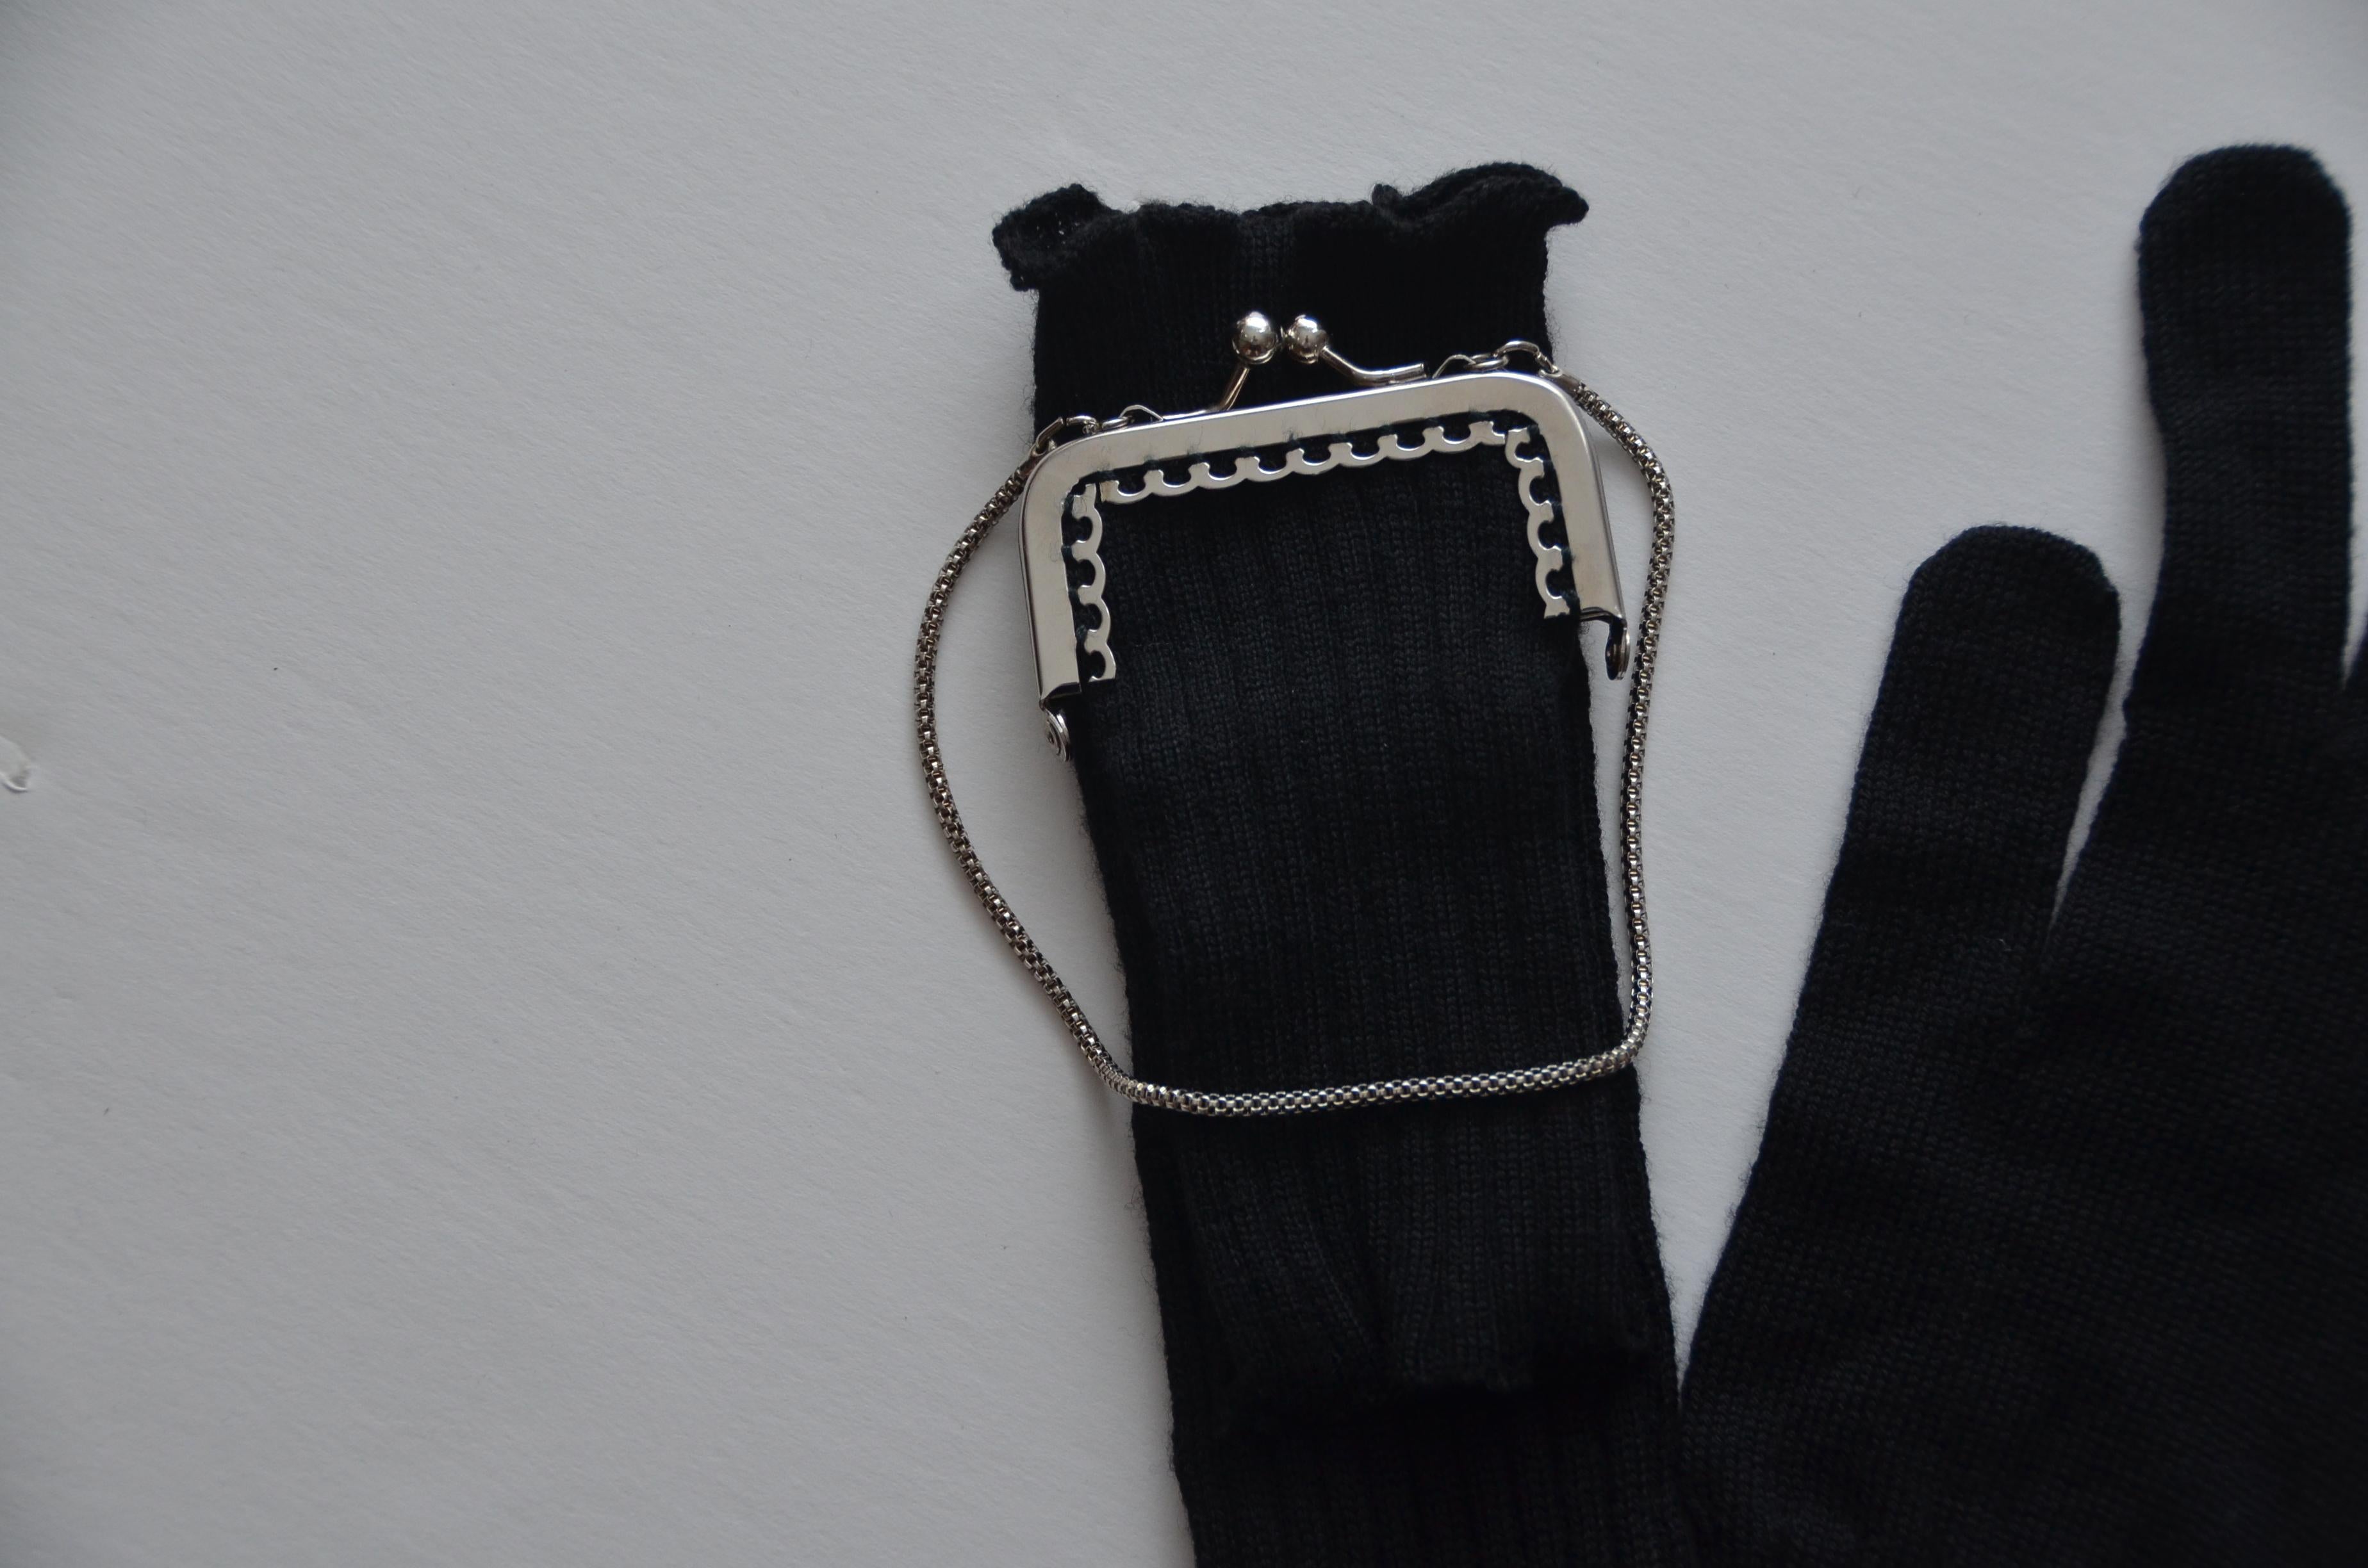 Sehr seltene JPG-Wollhandschuhe mit Mini-Täschchen
Definitiv JPG-Sammlerstück.
Nur an einem Handschuh ist eine Geldbörse befestigt 
NEU mit Anhängern 
Größe M

FINAL SALE.